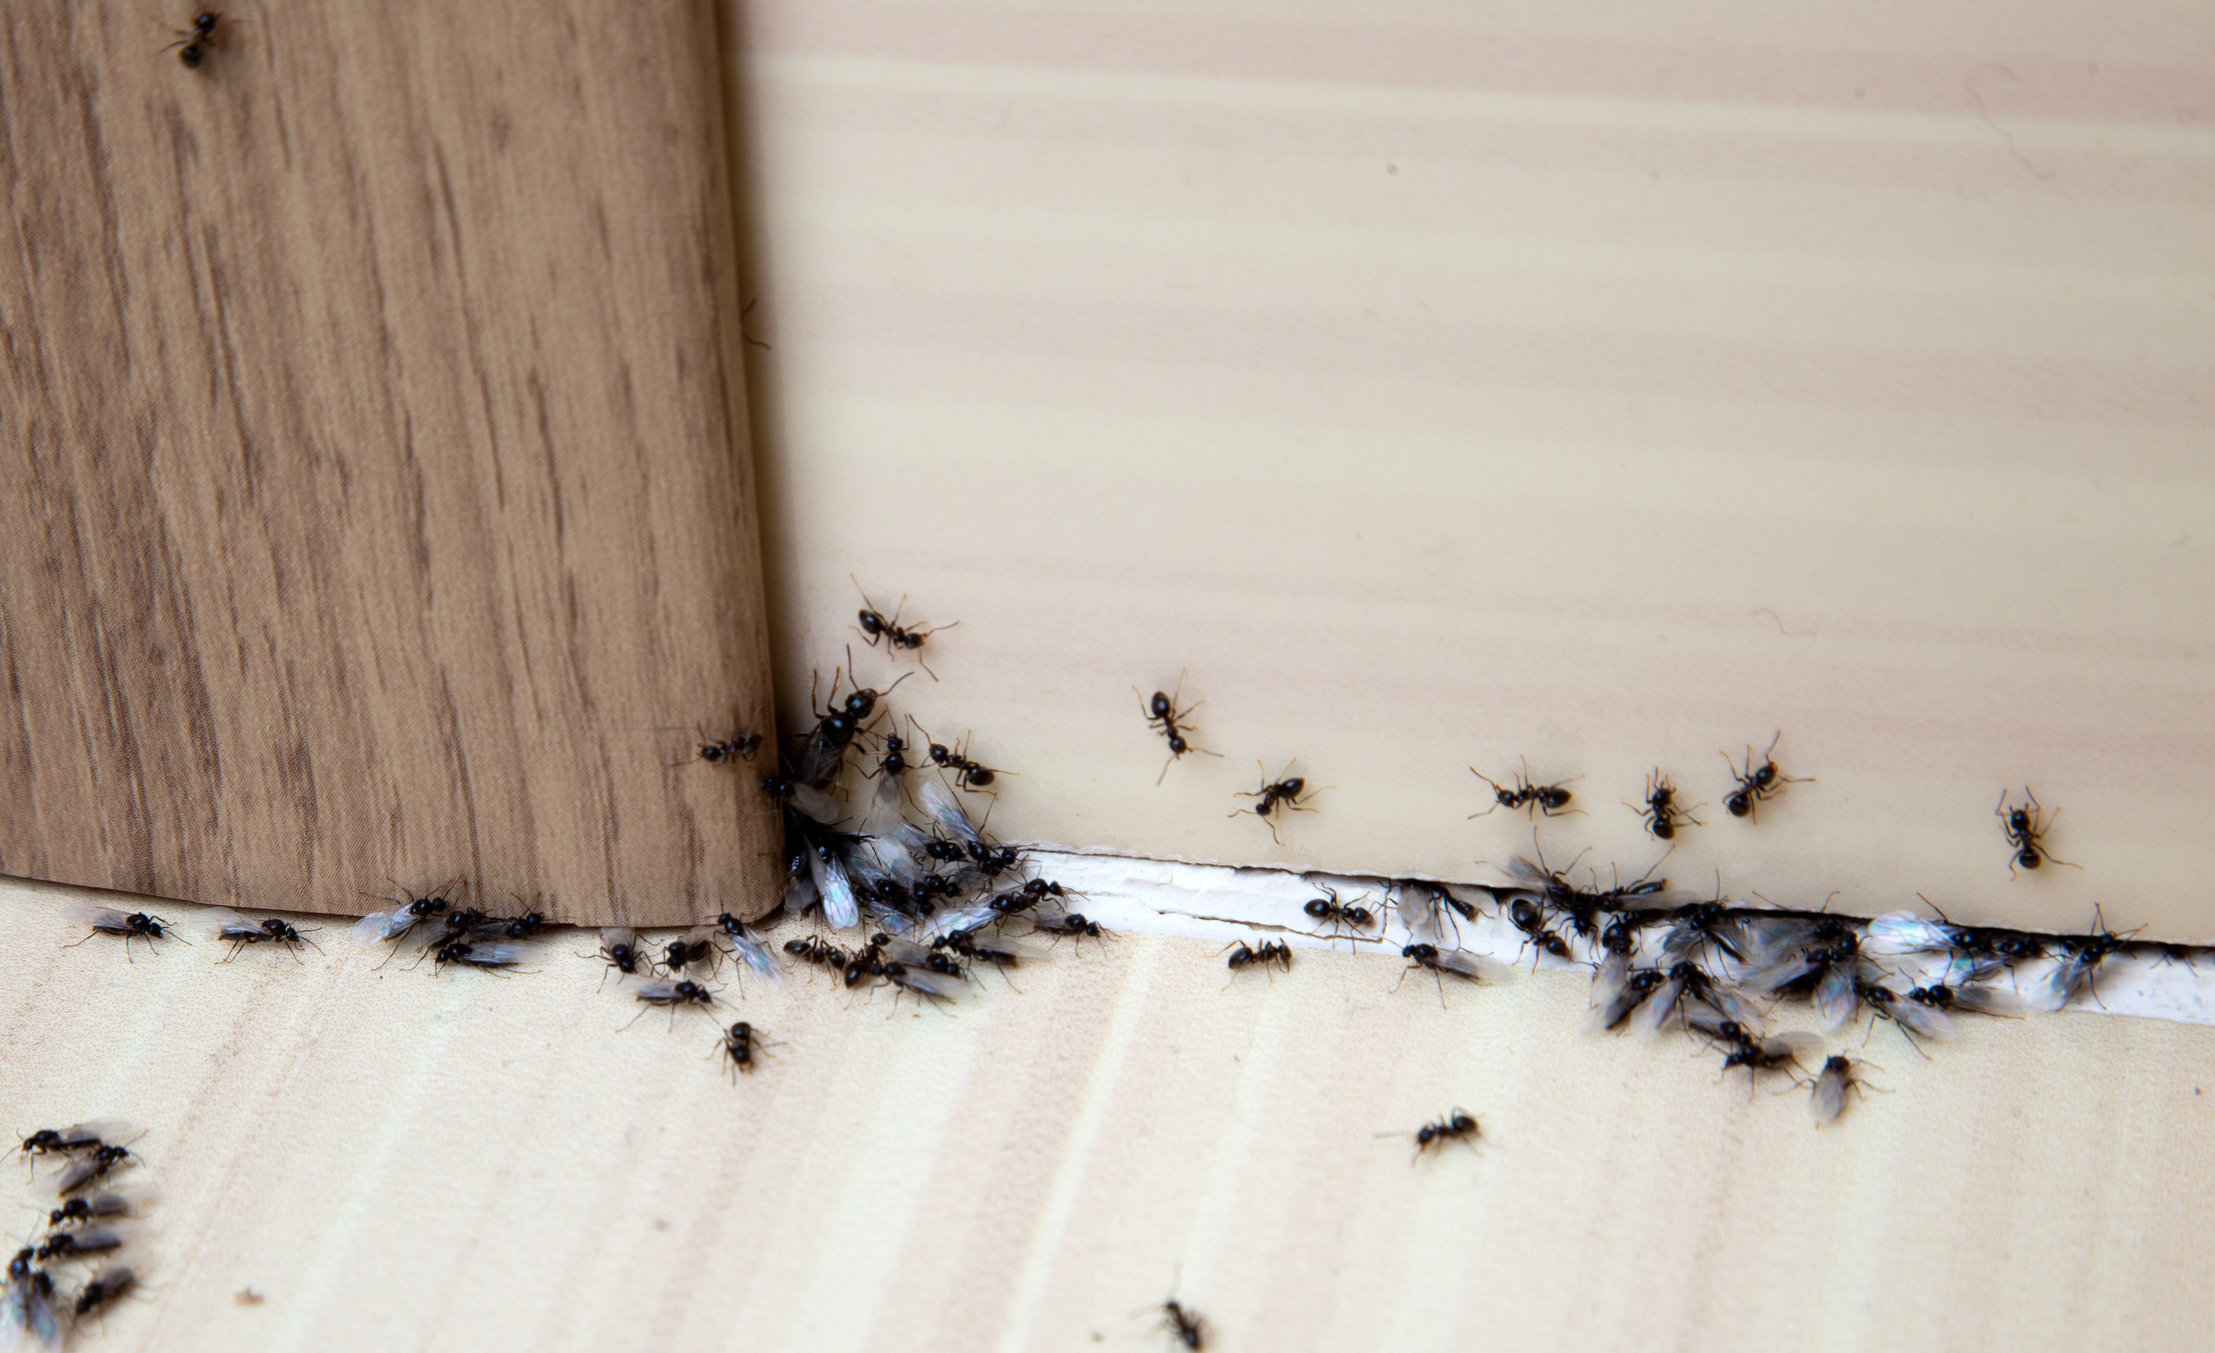 El control de plagas como las hormigas, es esencial para garantizar la higiene y salud en nuestros hogares, evitando la propagación de bacterias..